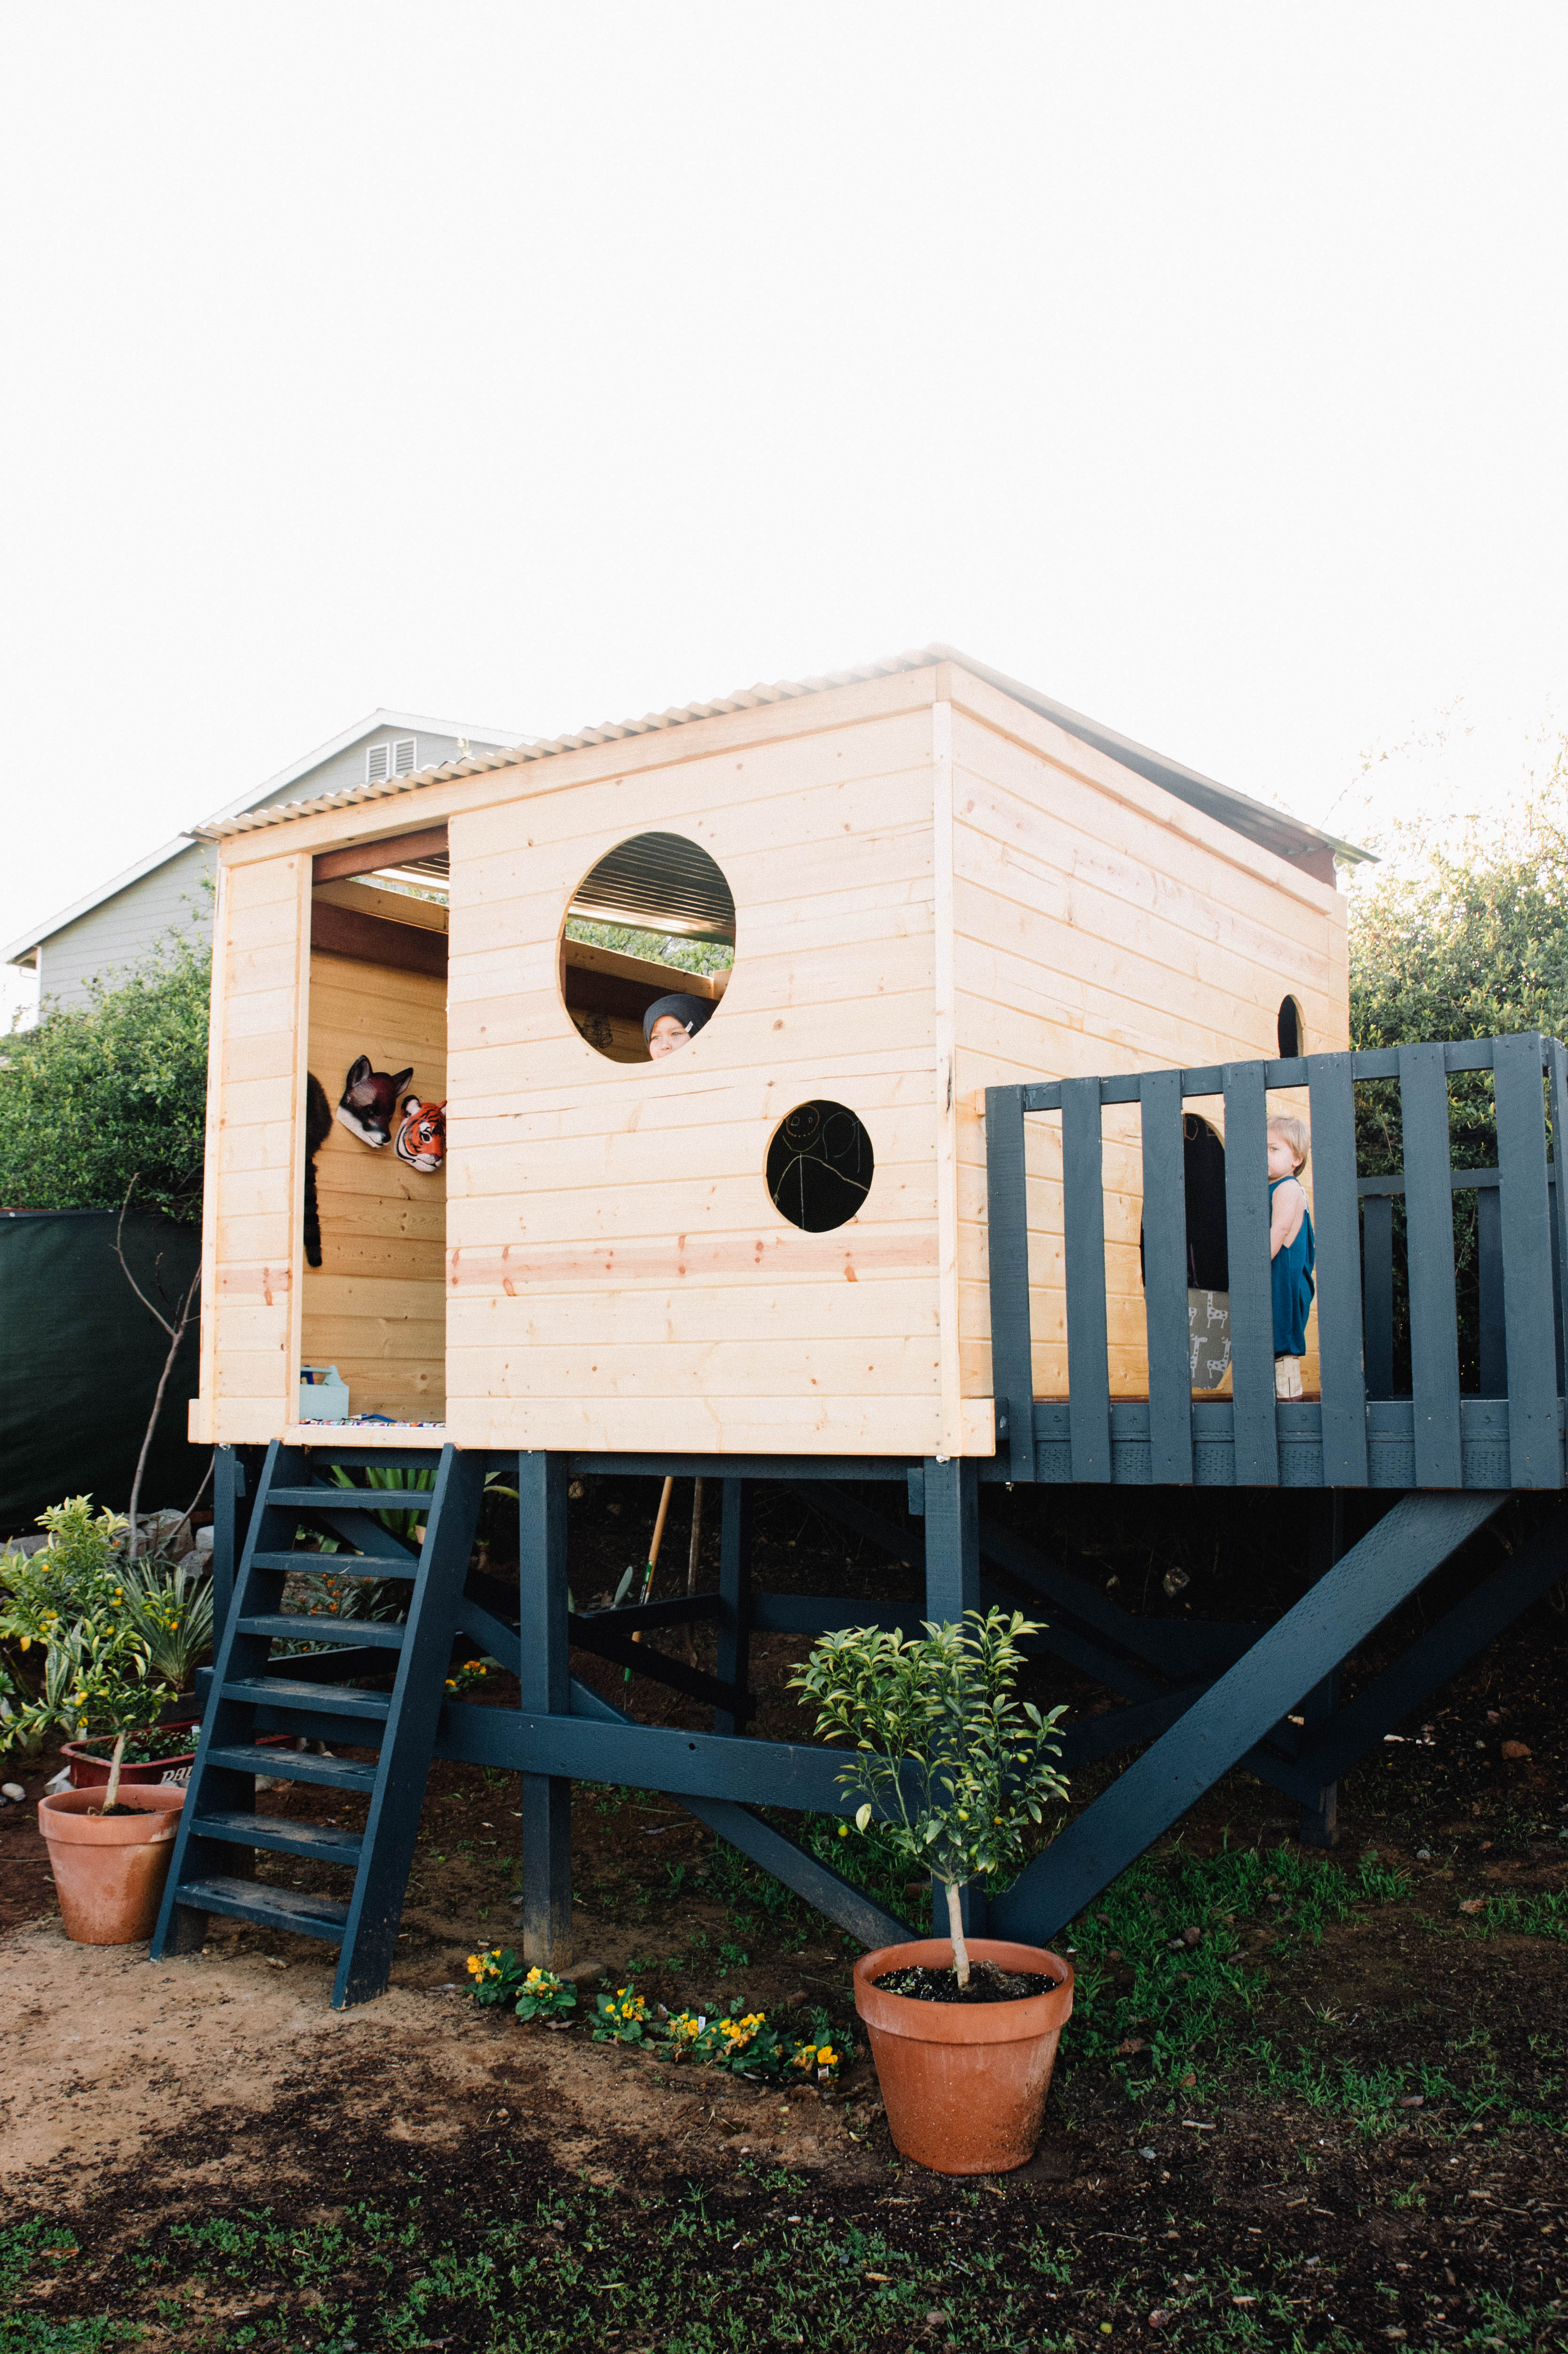 Bouw een blokhut/speelhuis op palen in de tuin! - Inspiraties - ShowHome.nl